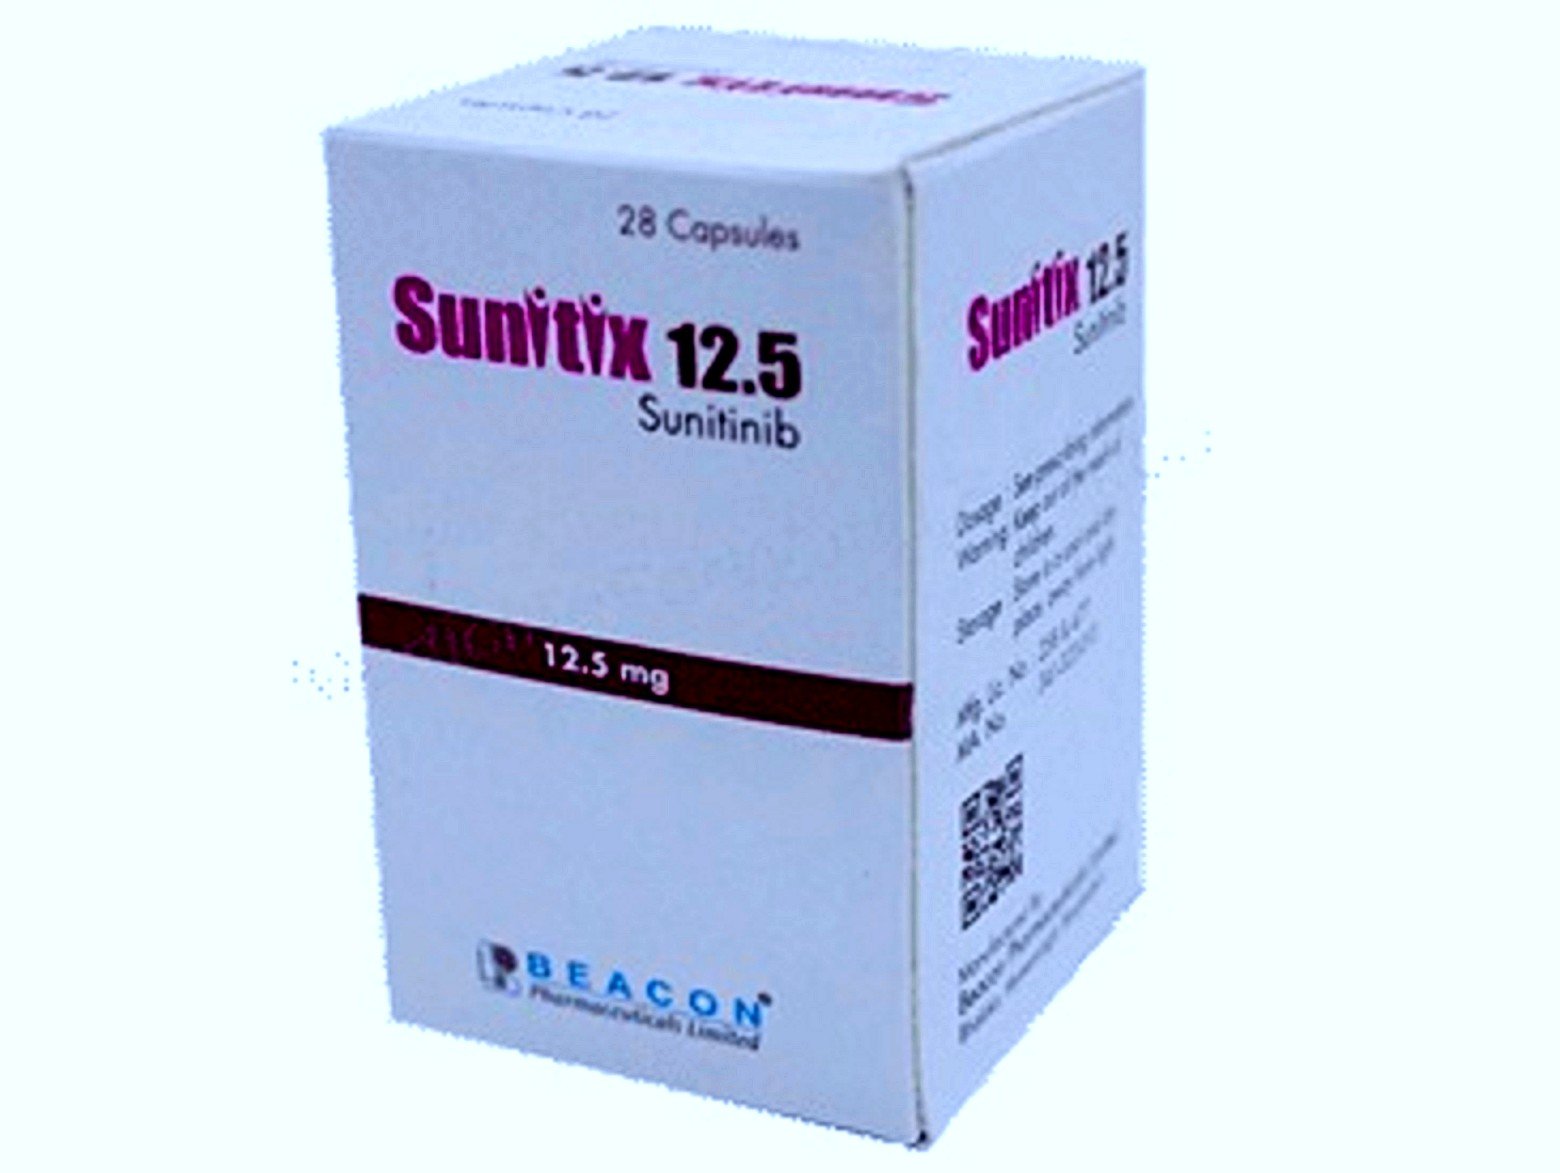 Sunitix Sunitinib 12.5 MG